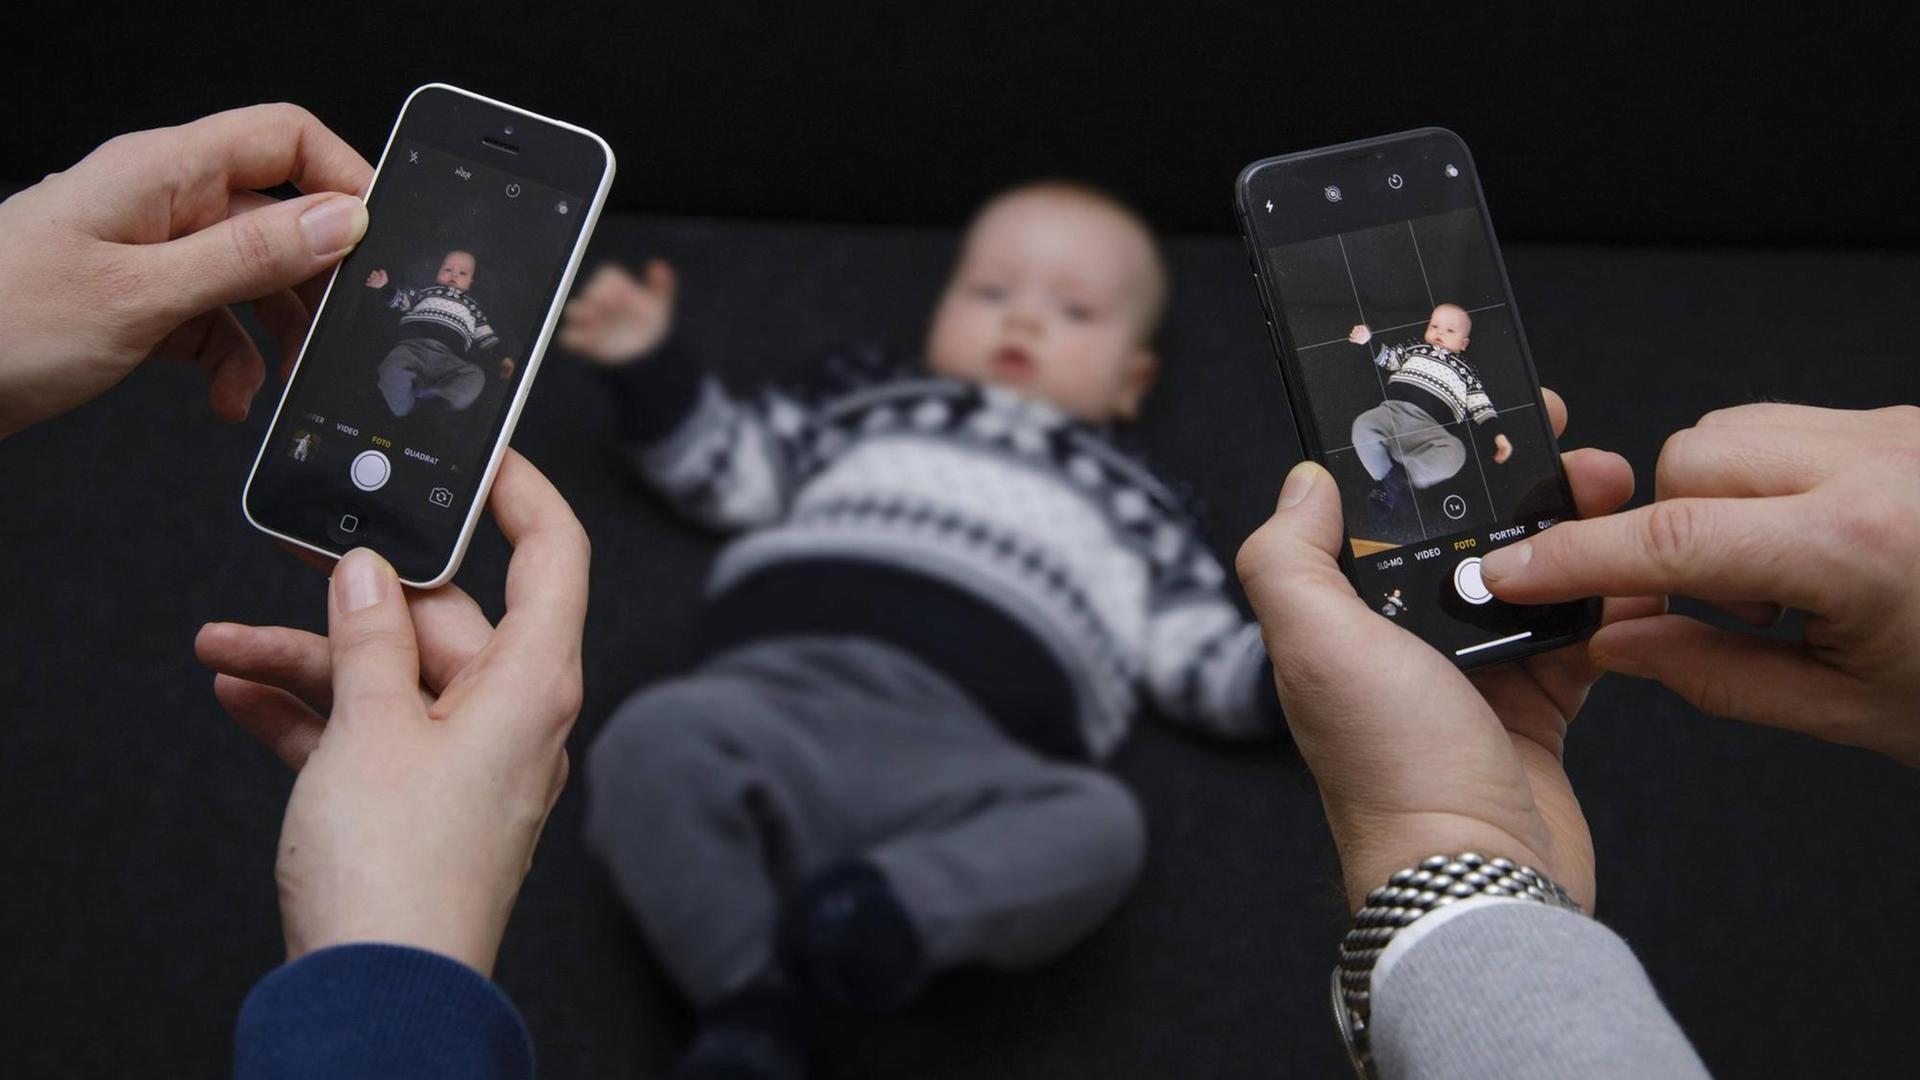 Ein Baby wird mit zwei Smartphones fotografiert